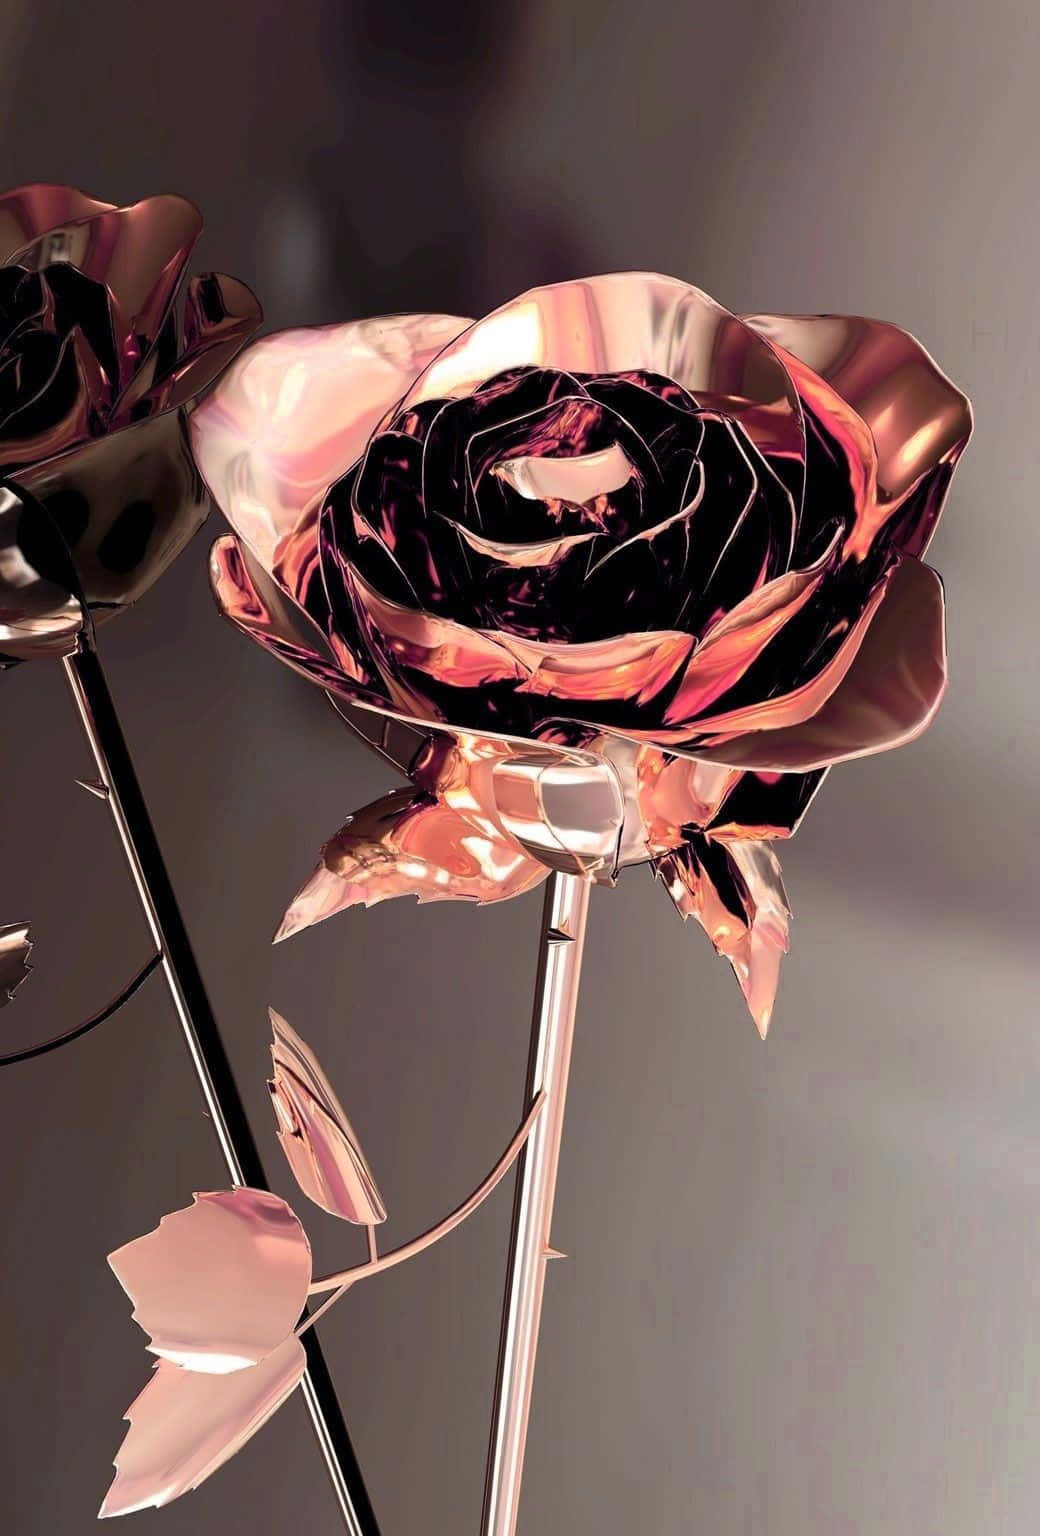 Caption: Elegant Rose Gold Phone Featuring Metallic Rose Flower Design